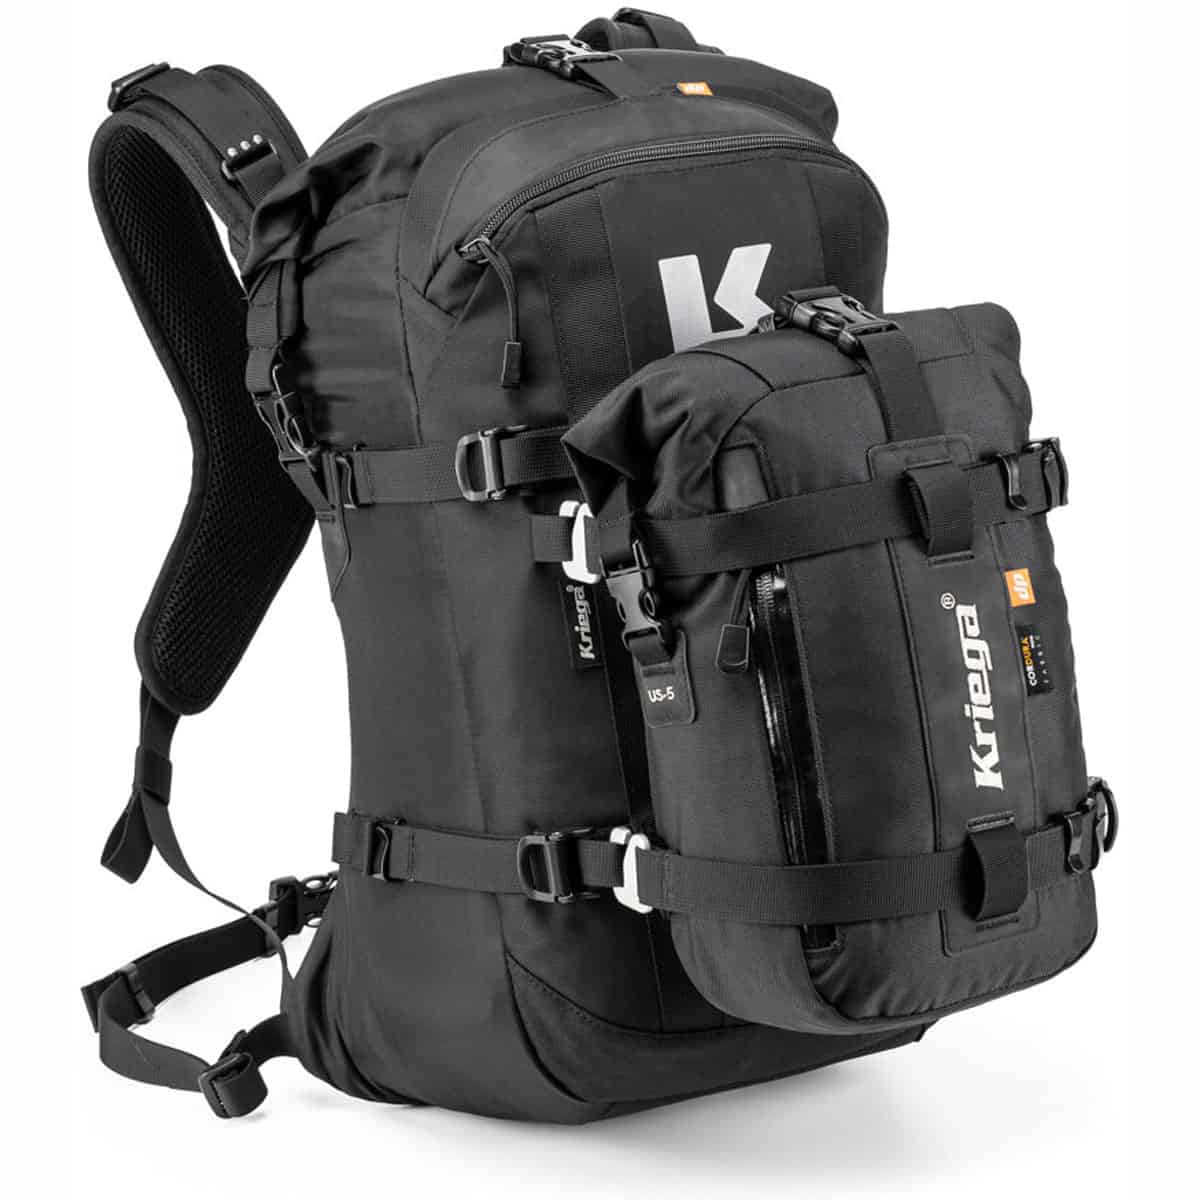 Kriega R22 waterproof rucksack with additions